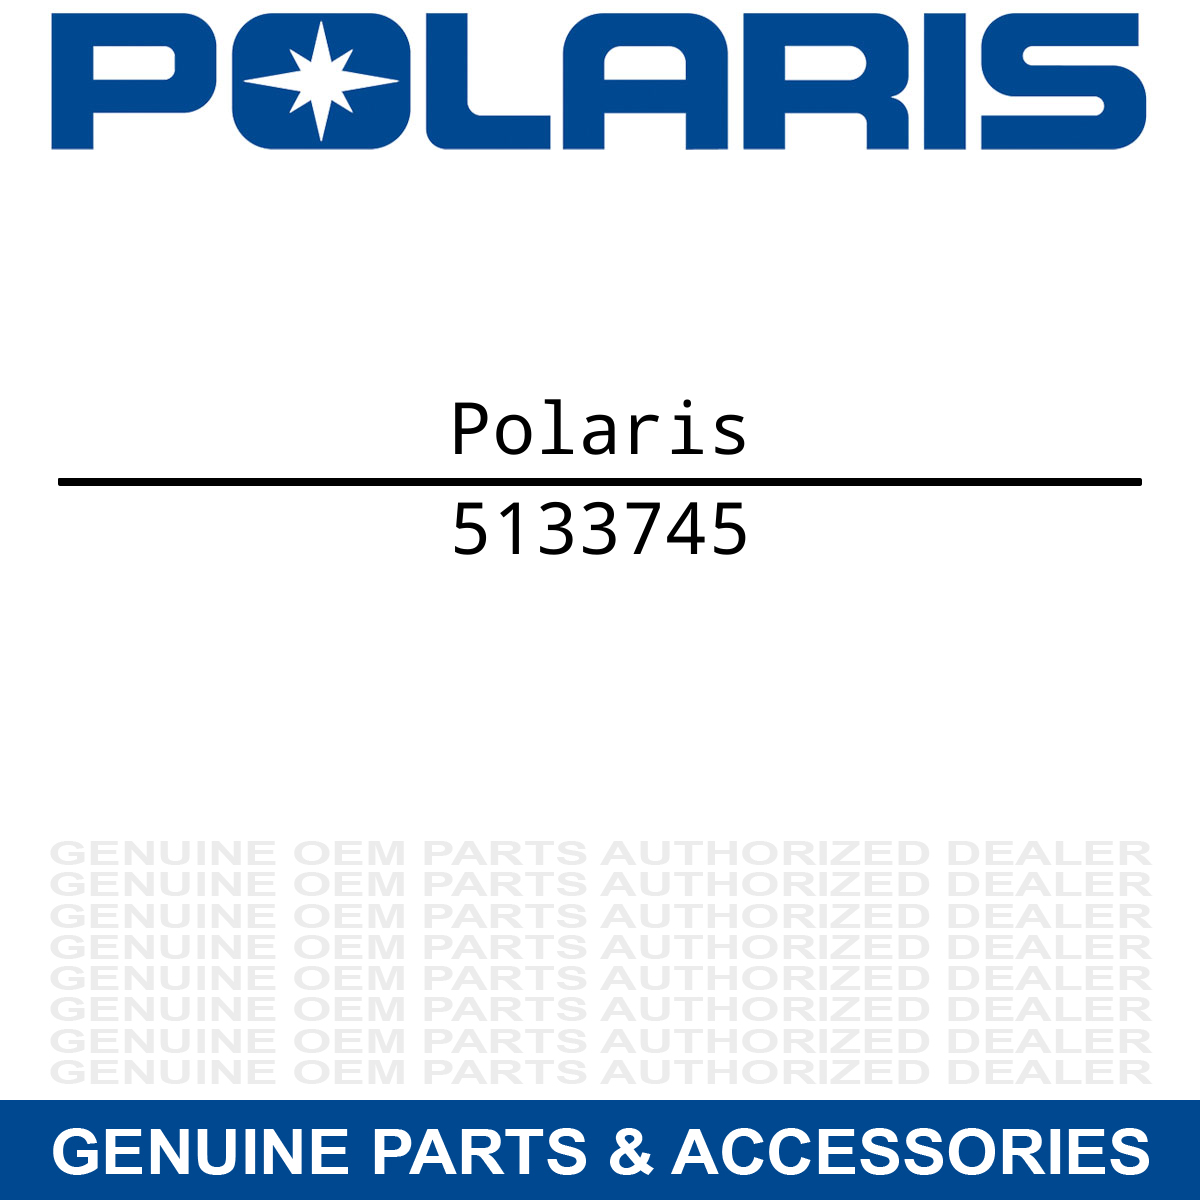 Polaris 5133745 Preload Adjust Spring Collar XC Frontier Classic 500 600 700 800 Classic